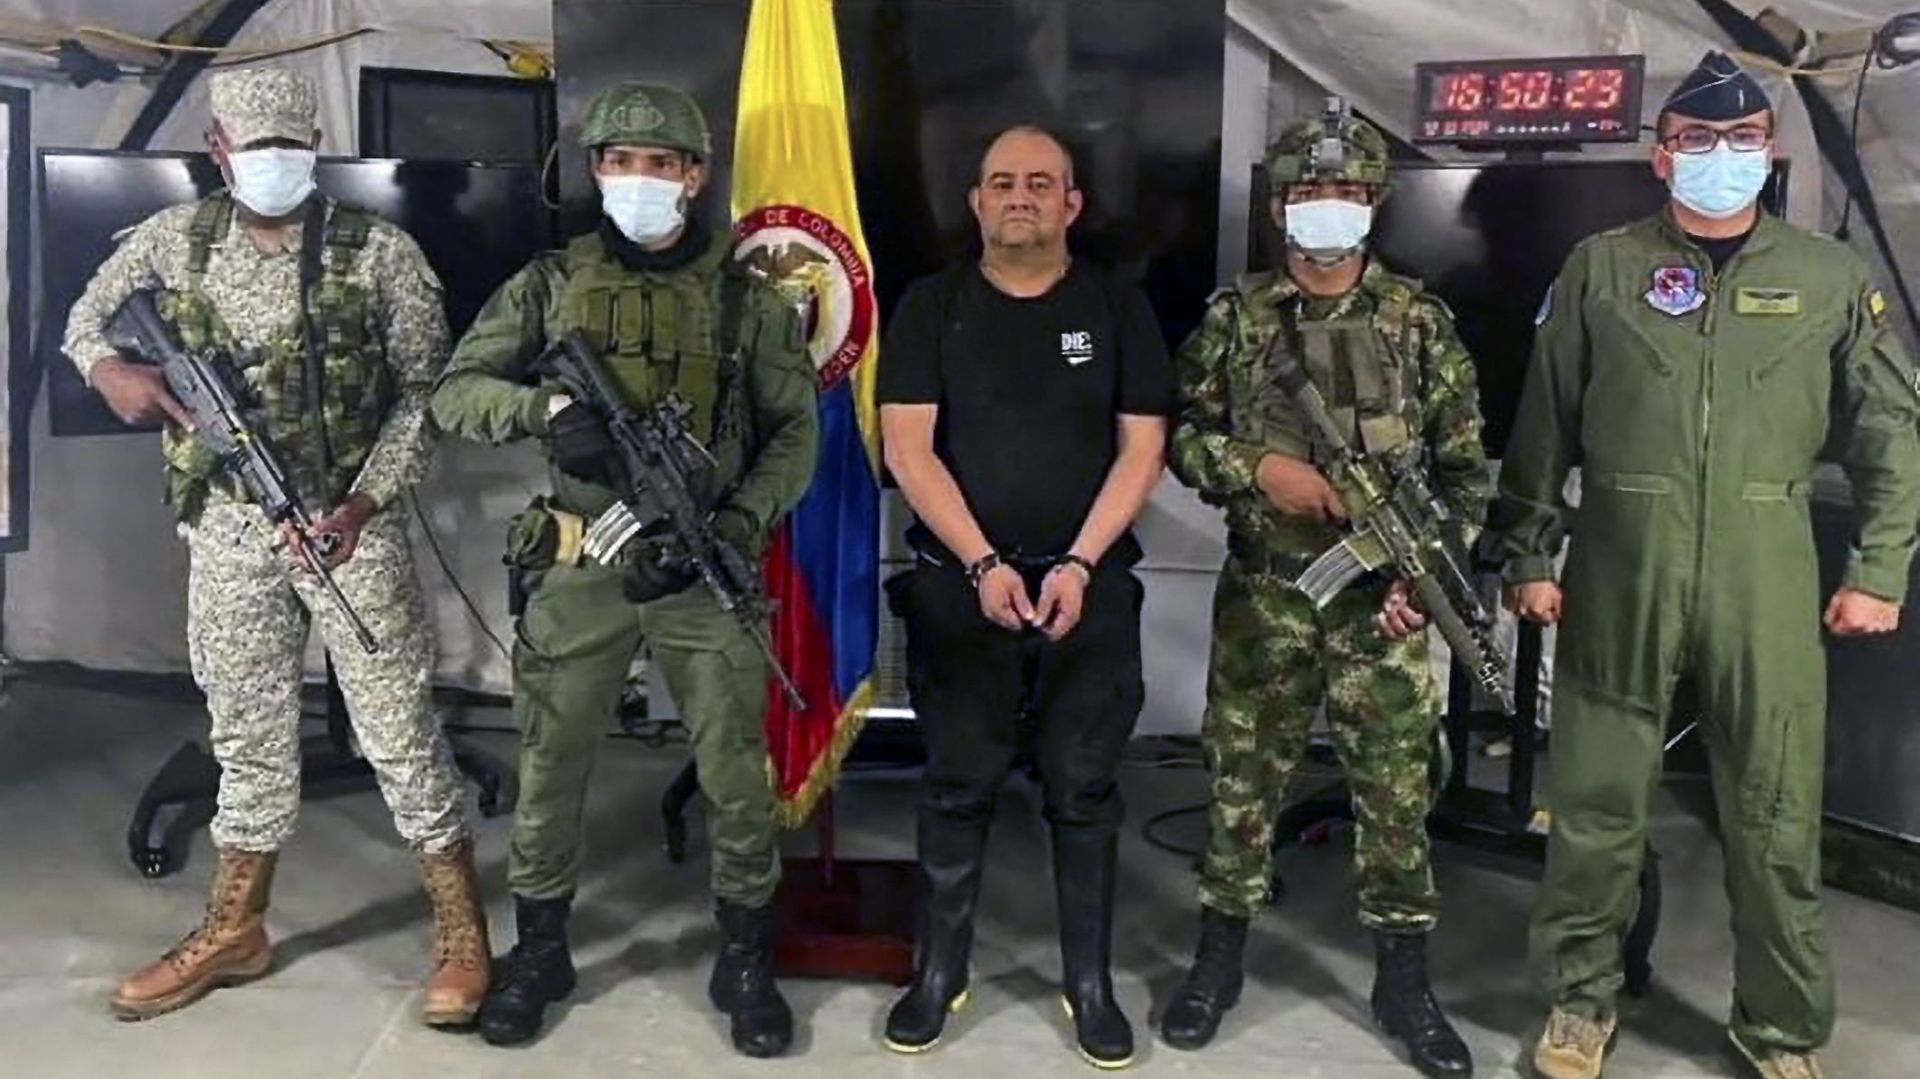 arrestation-du-baron-de-la-drogue-otoniel-la-colombie-prepare-son-extradition-vers-les-etats-unis